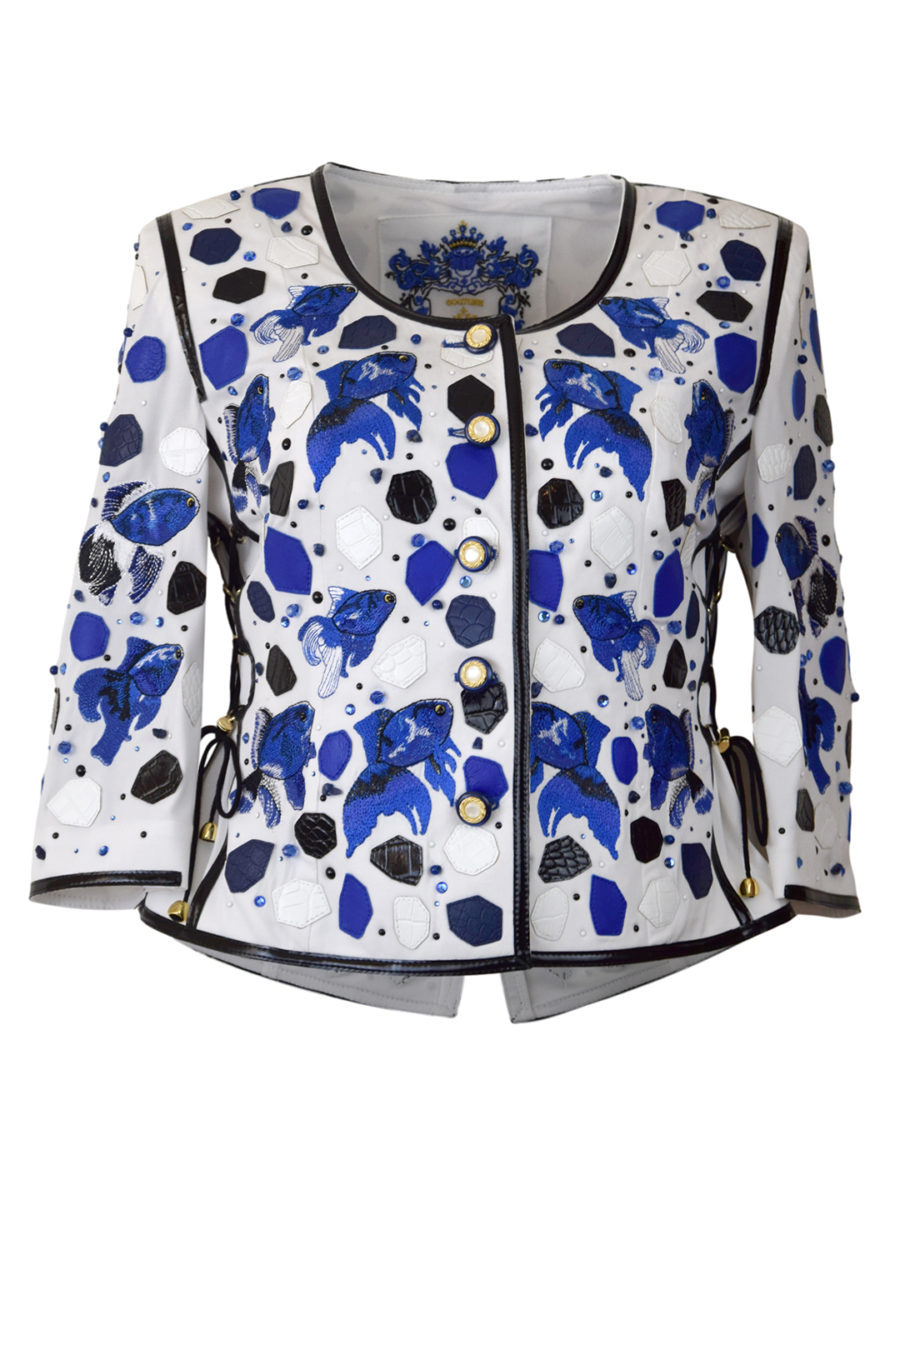 Haute Couture-Jacke mit "Ocean-embroidery", appliziert mit 112 Kristallen & Perlen und ca.394 Hotfix Kristallen in Royalblue und Onyx